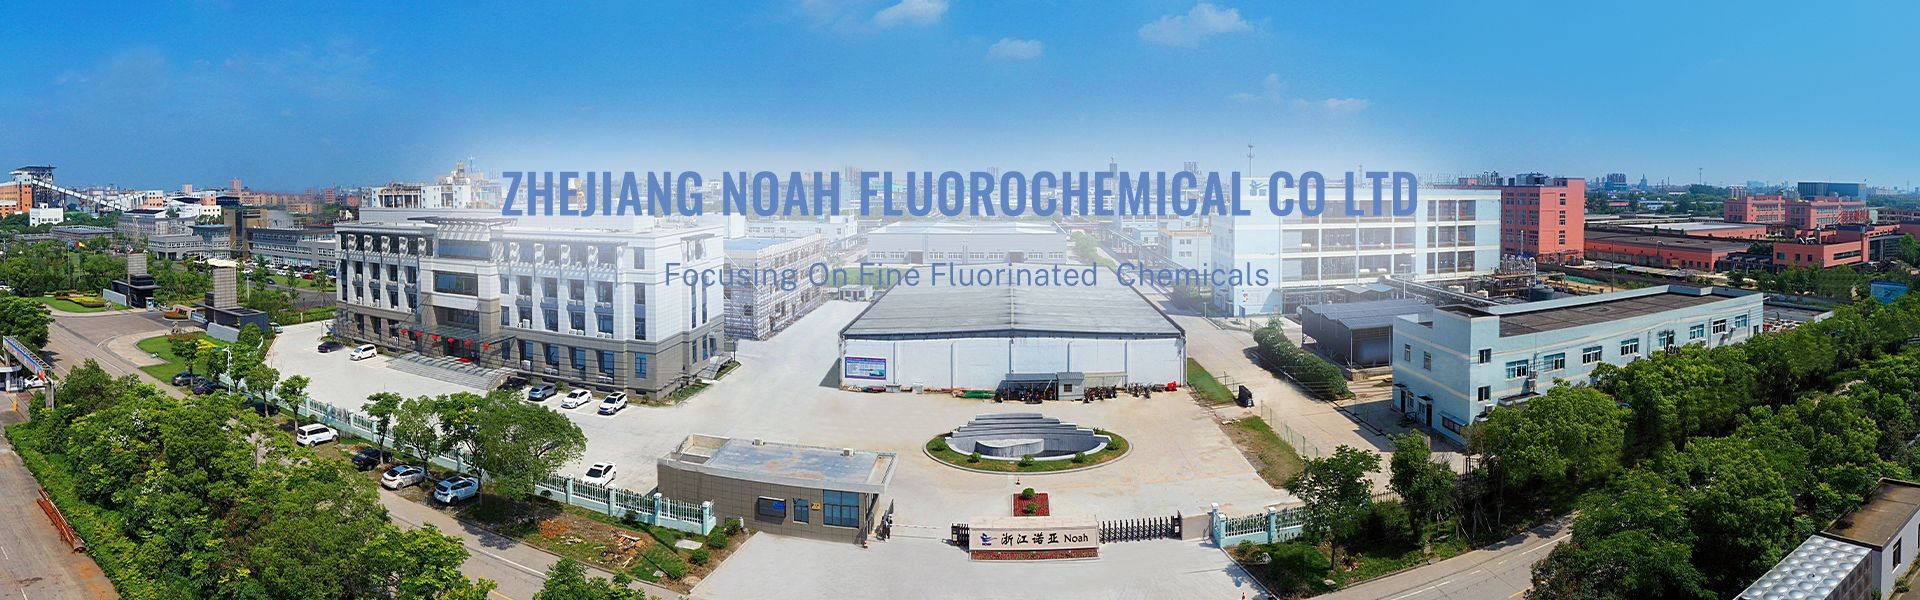 Zhejiang Noah Perflurochemical Co.,Ltd